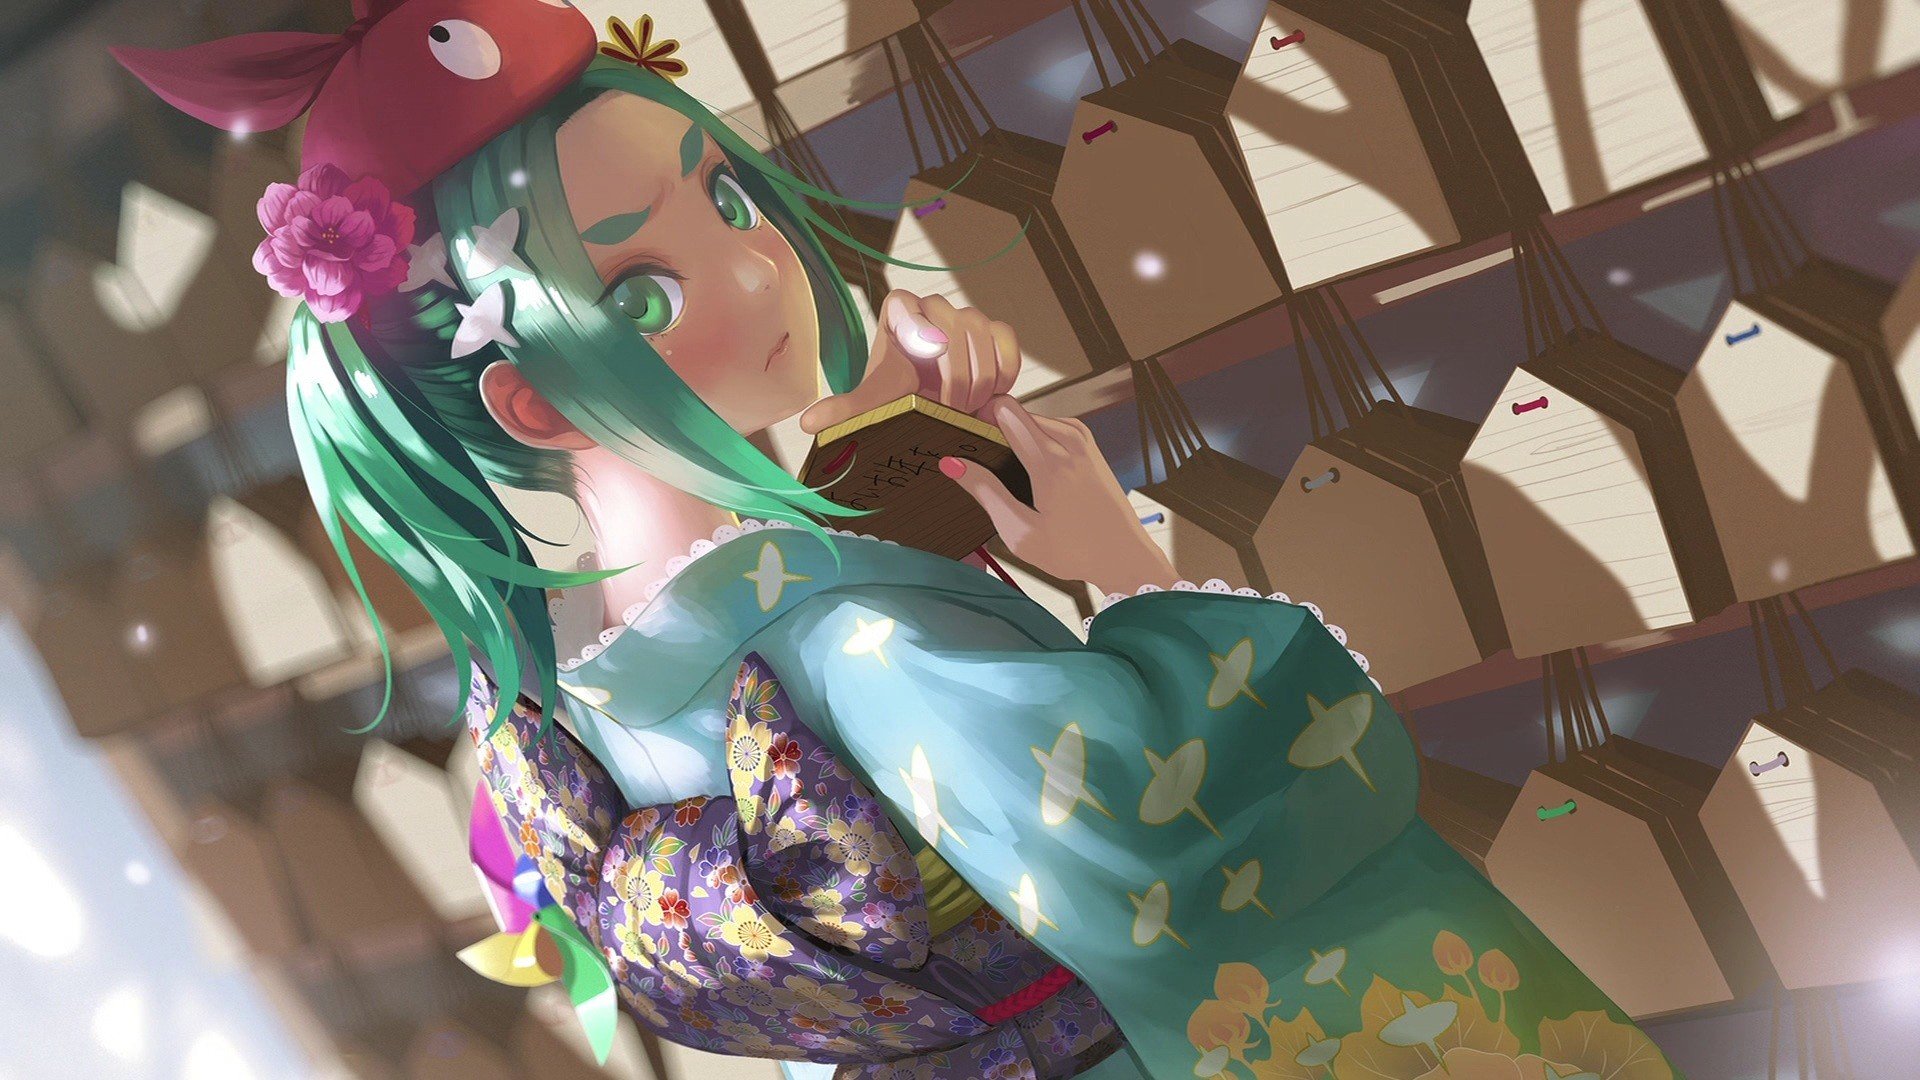 Ononoki Yotsugi, Monogatari Series, Blushing, Green eyes, Green hair, Japanese clothes, Traditional clothing, Yukata, Flowers, Anime, Anime girls Wallpaper